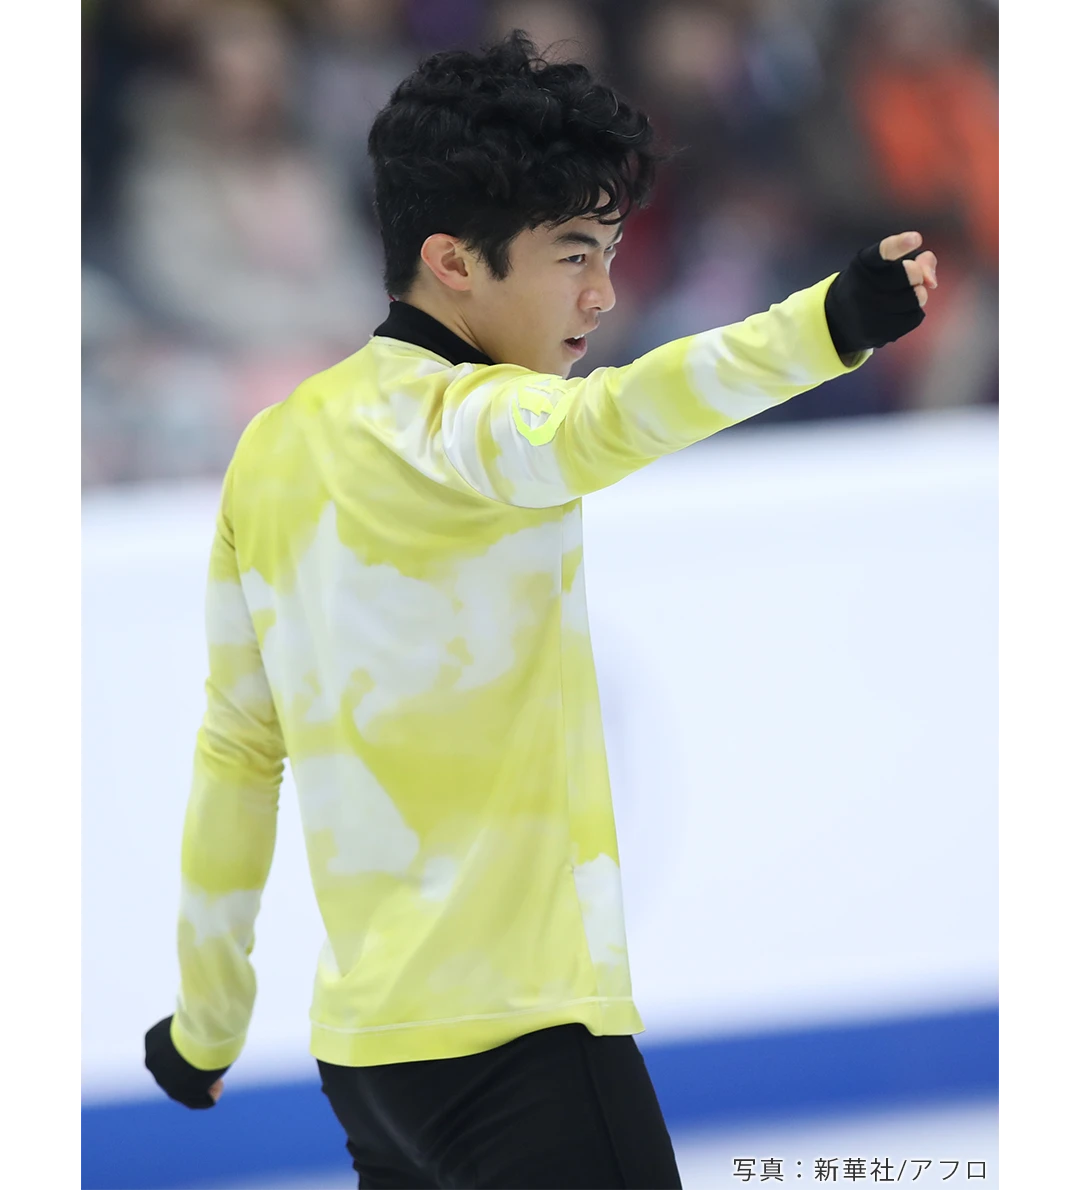 2019年フィギュアスケートグランプリファイナルで優勝したネイサン・チェン選手